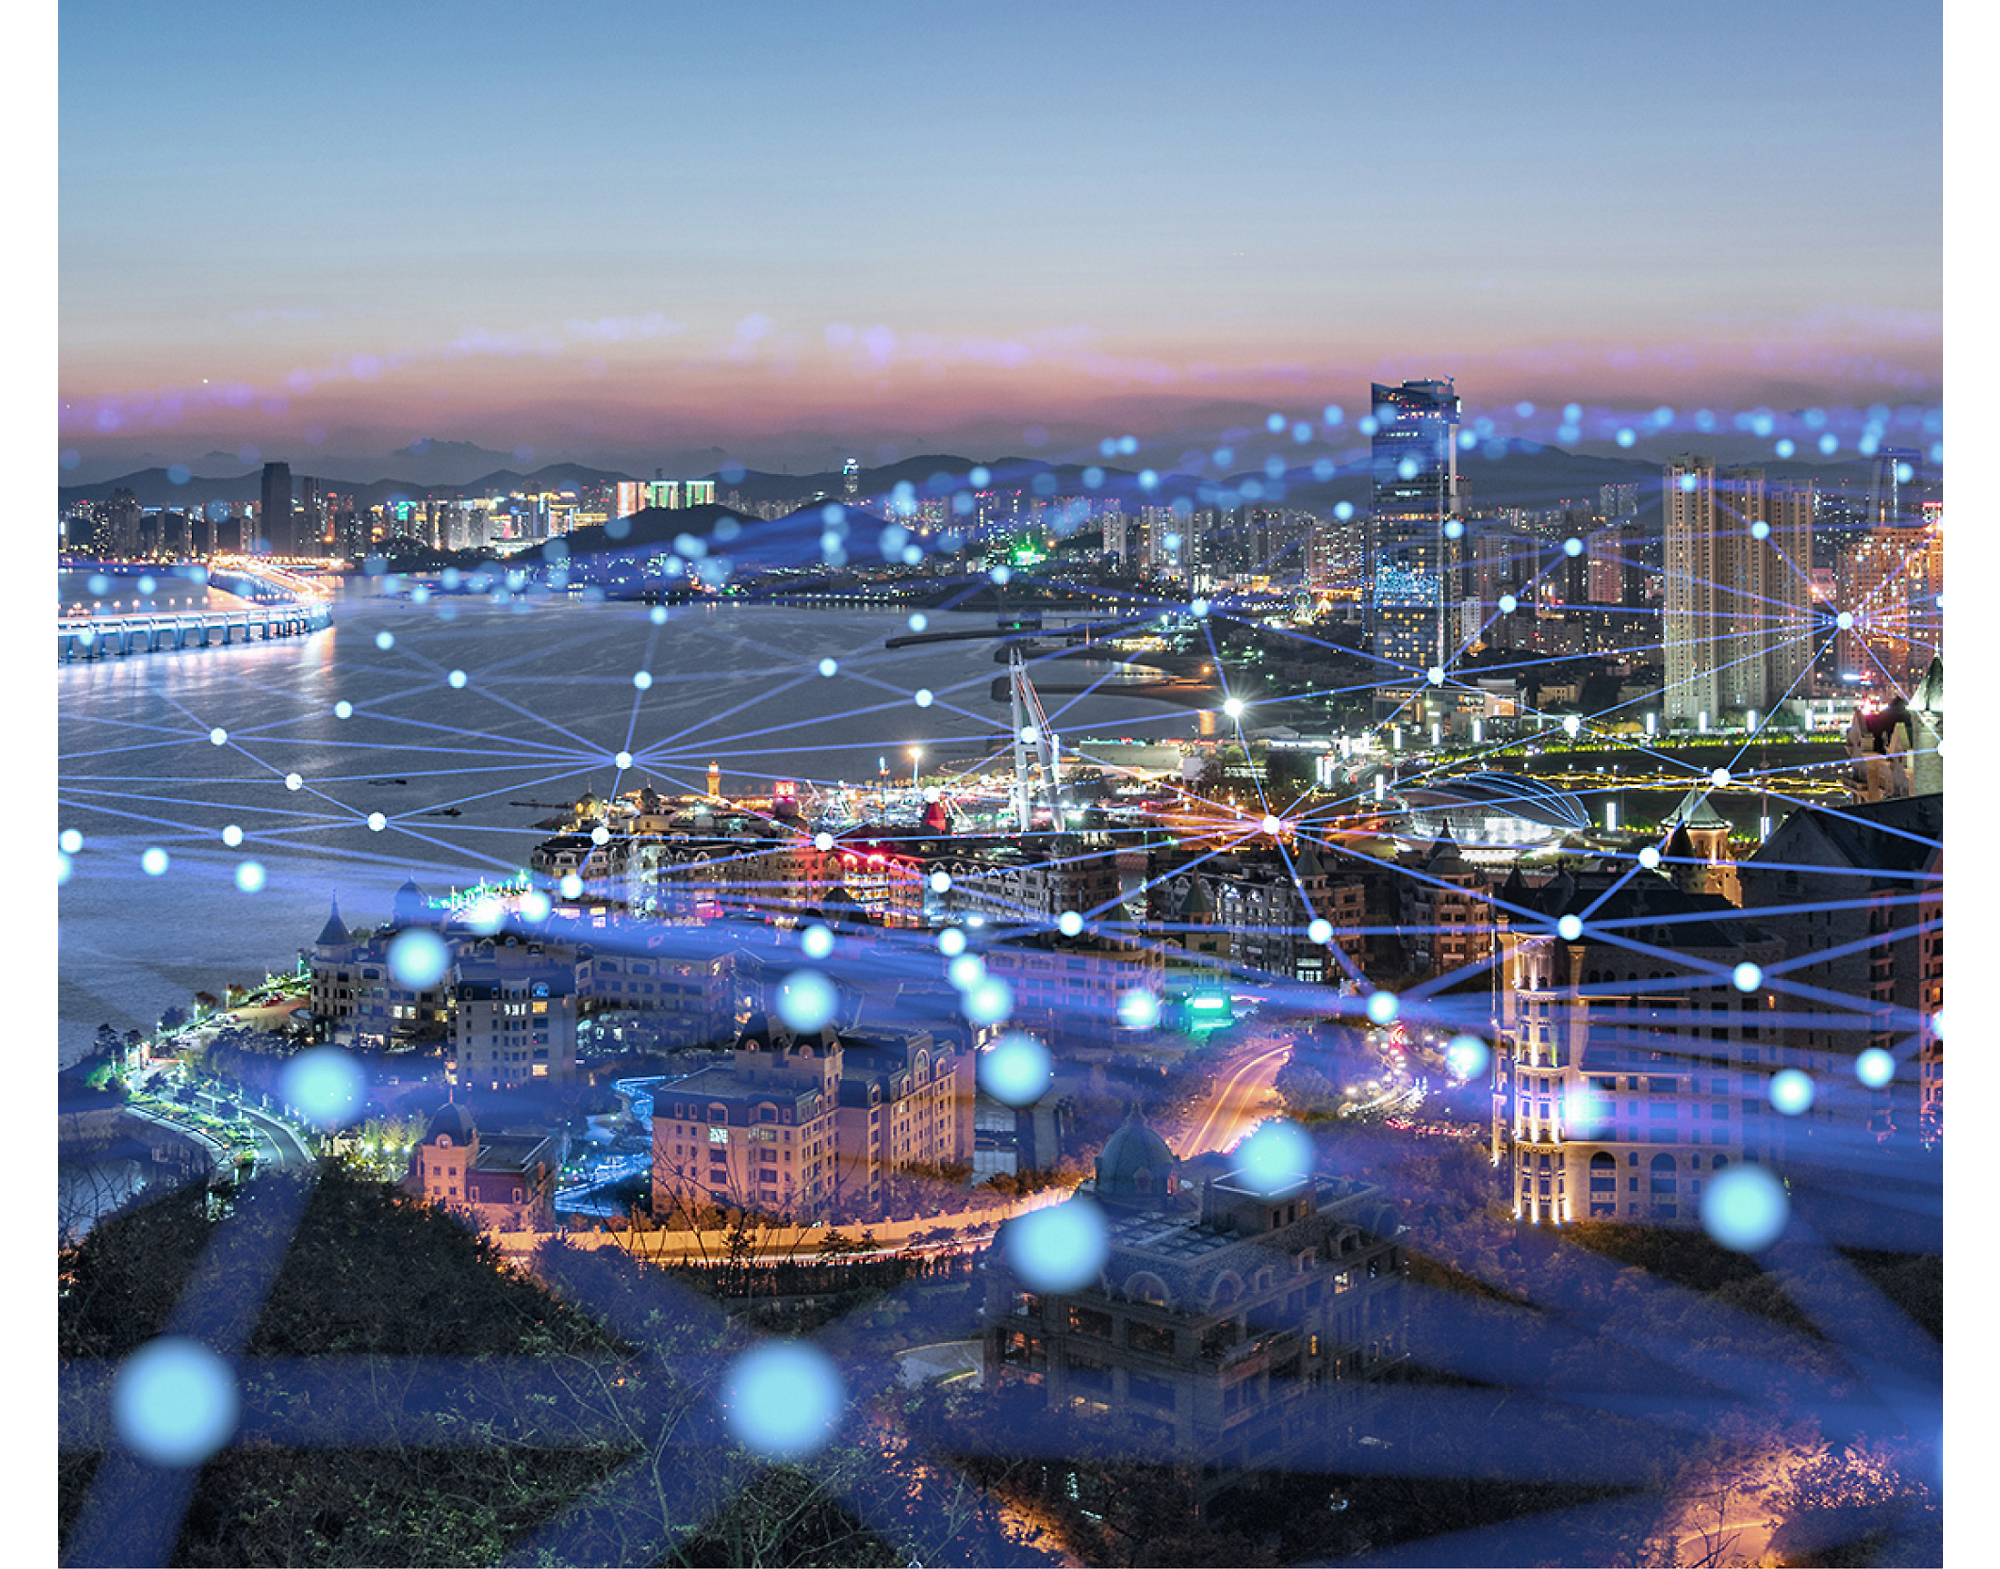 Zdjęcie lotnicze miasta o zmierzchu z podświetlonymi ulicami i budynkami, nakładające się na świecącą siatkę sieci cyfrowej.